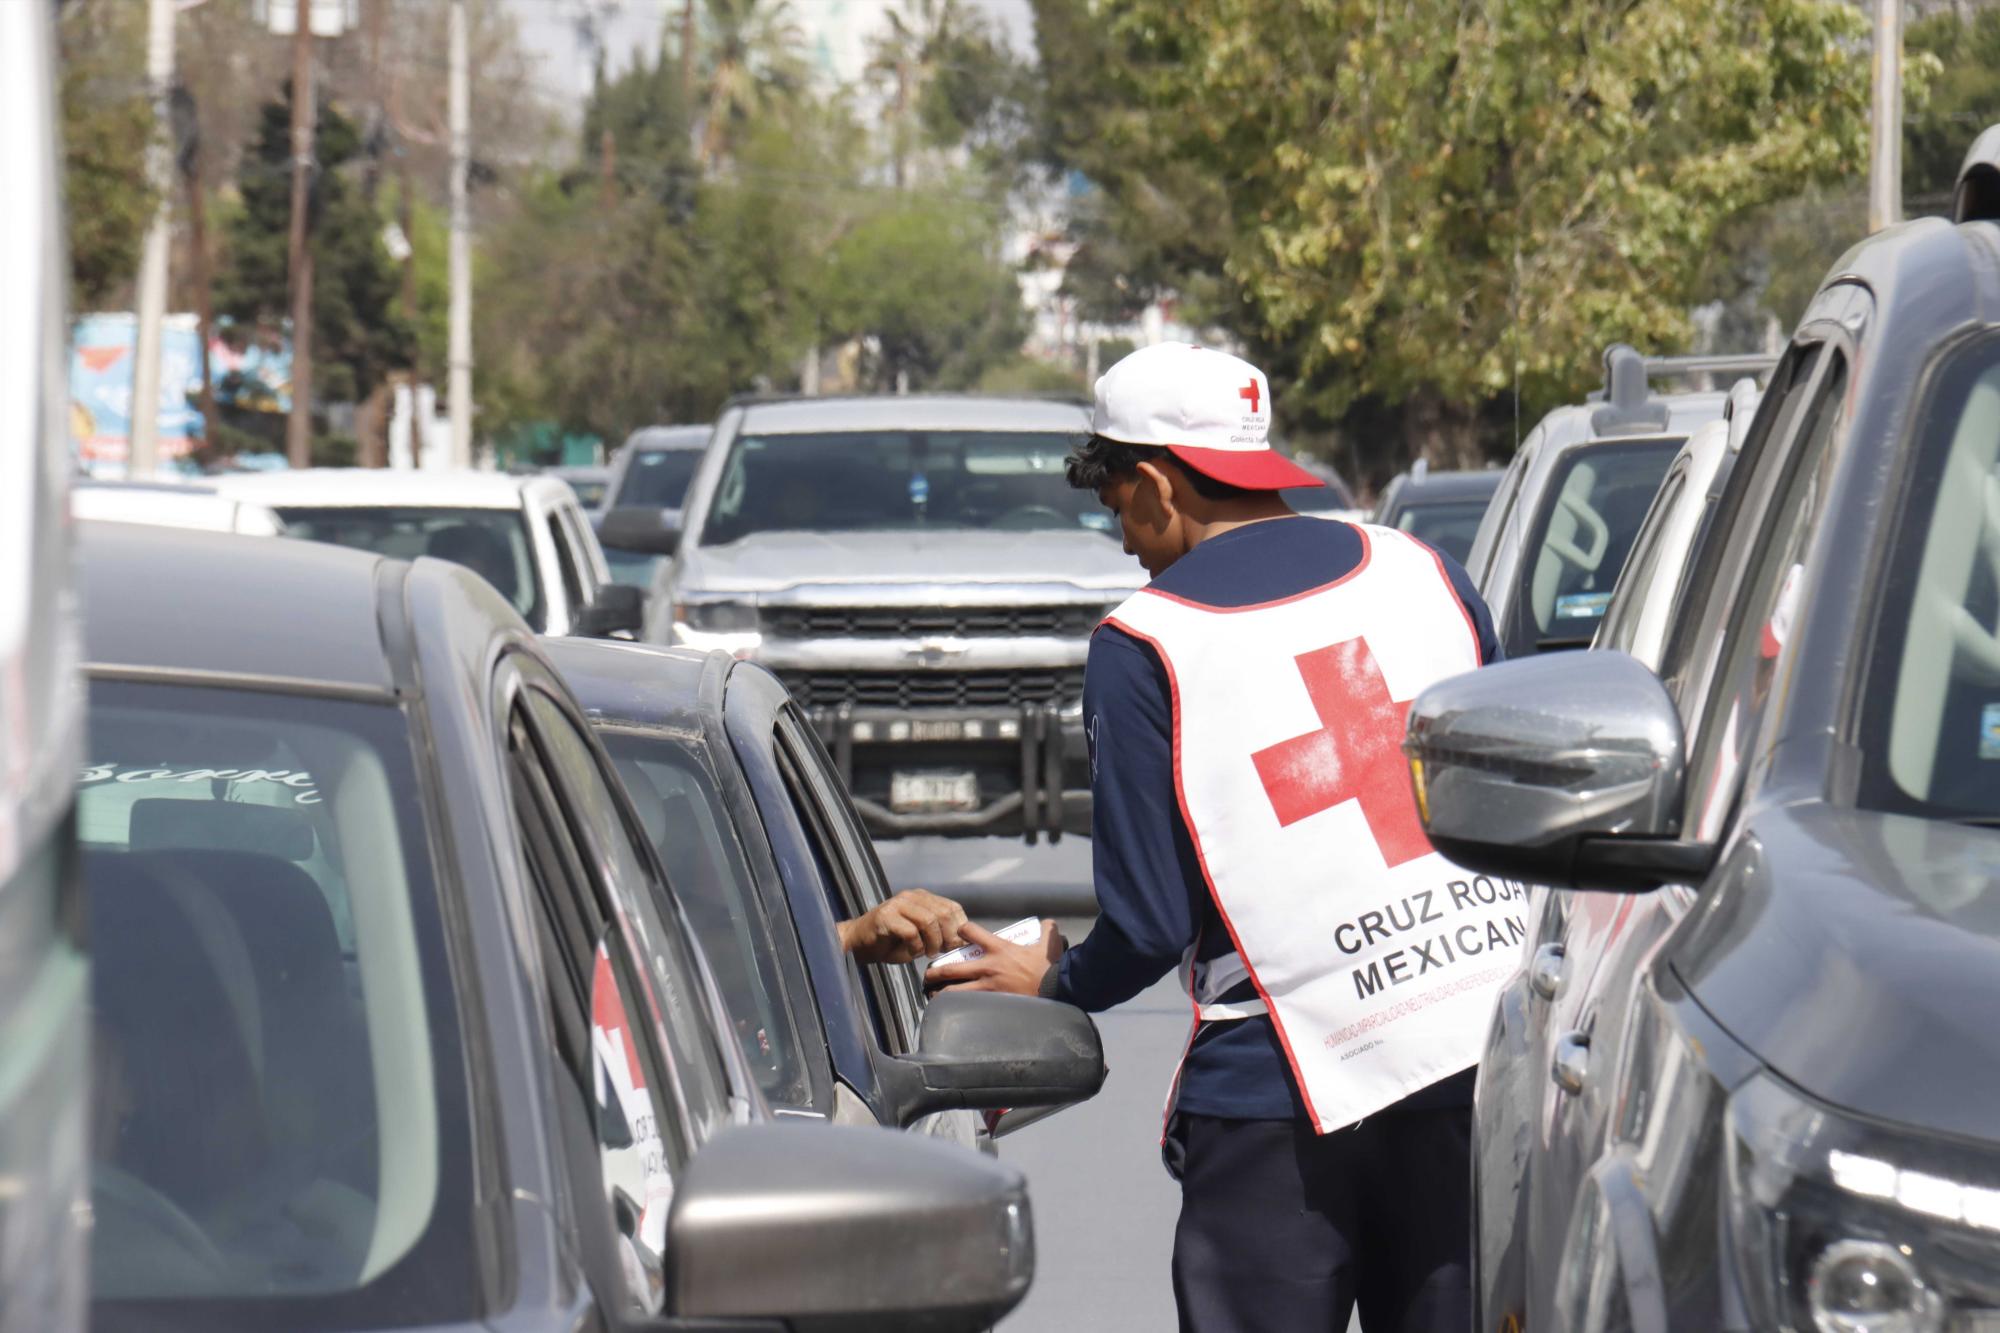 $!La participación ciudadana es vital para el éxito de la campaña de boteo de la Cruz Roja.